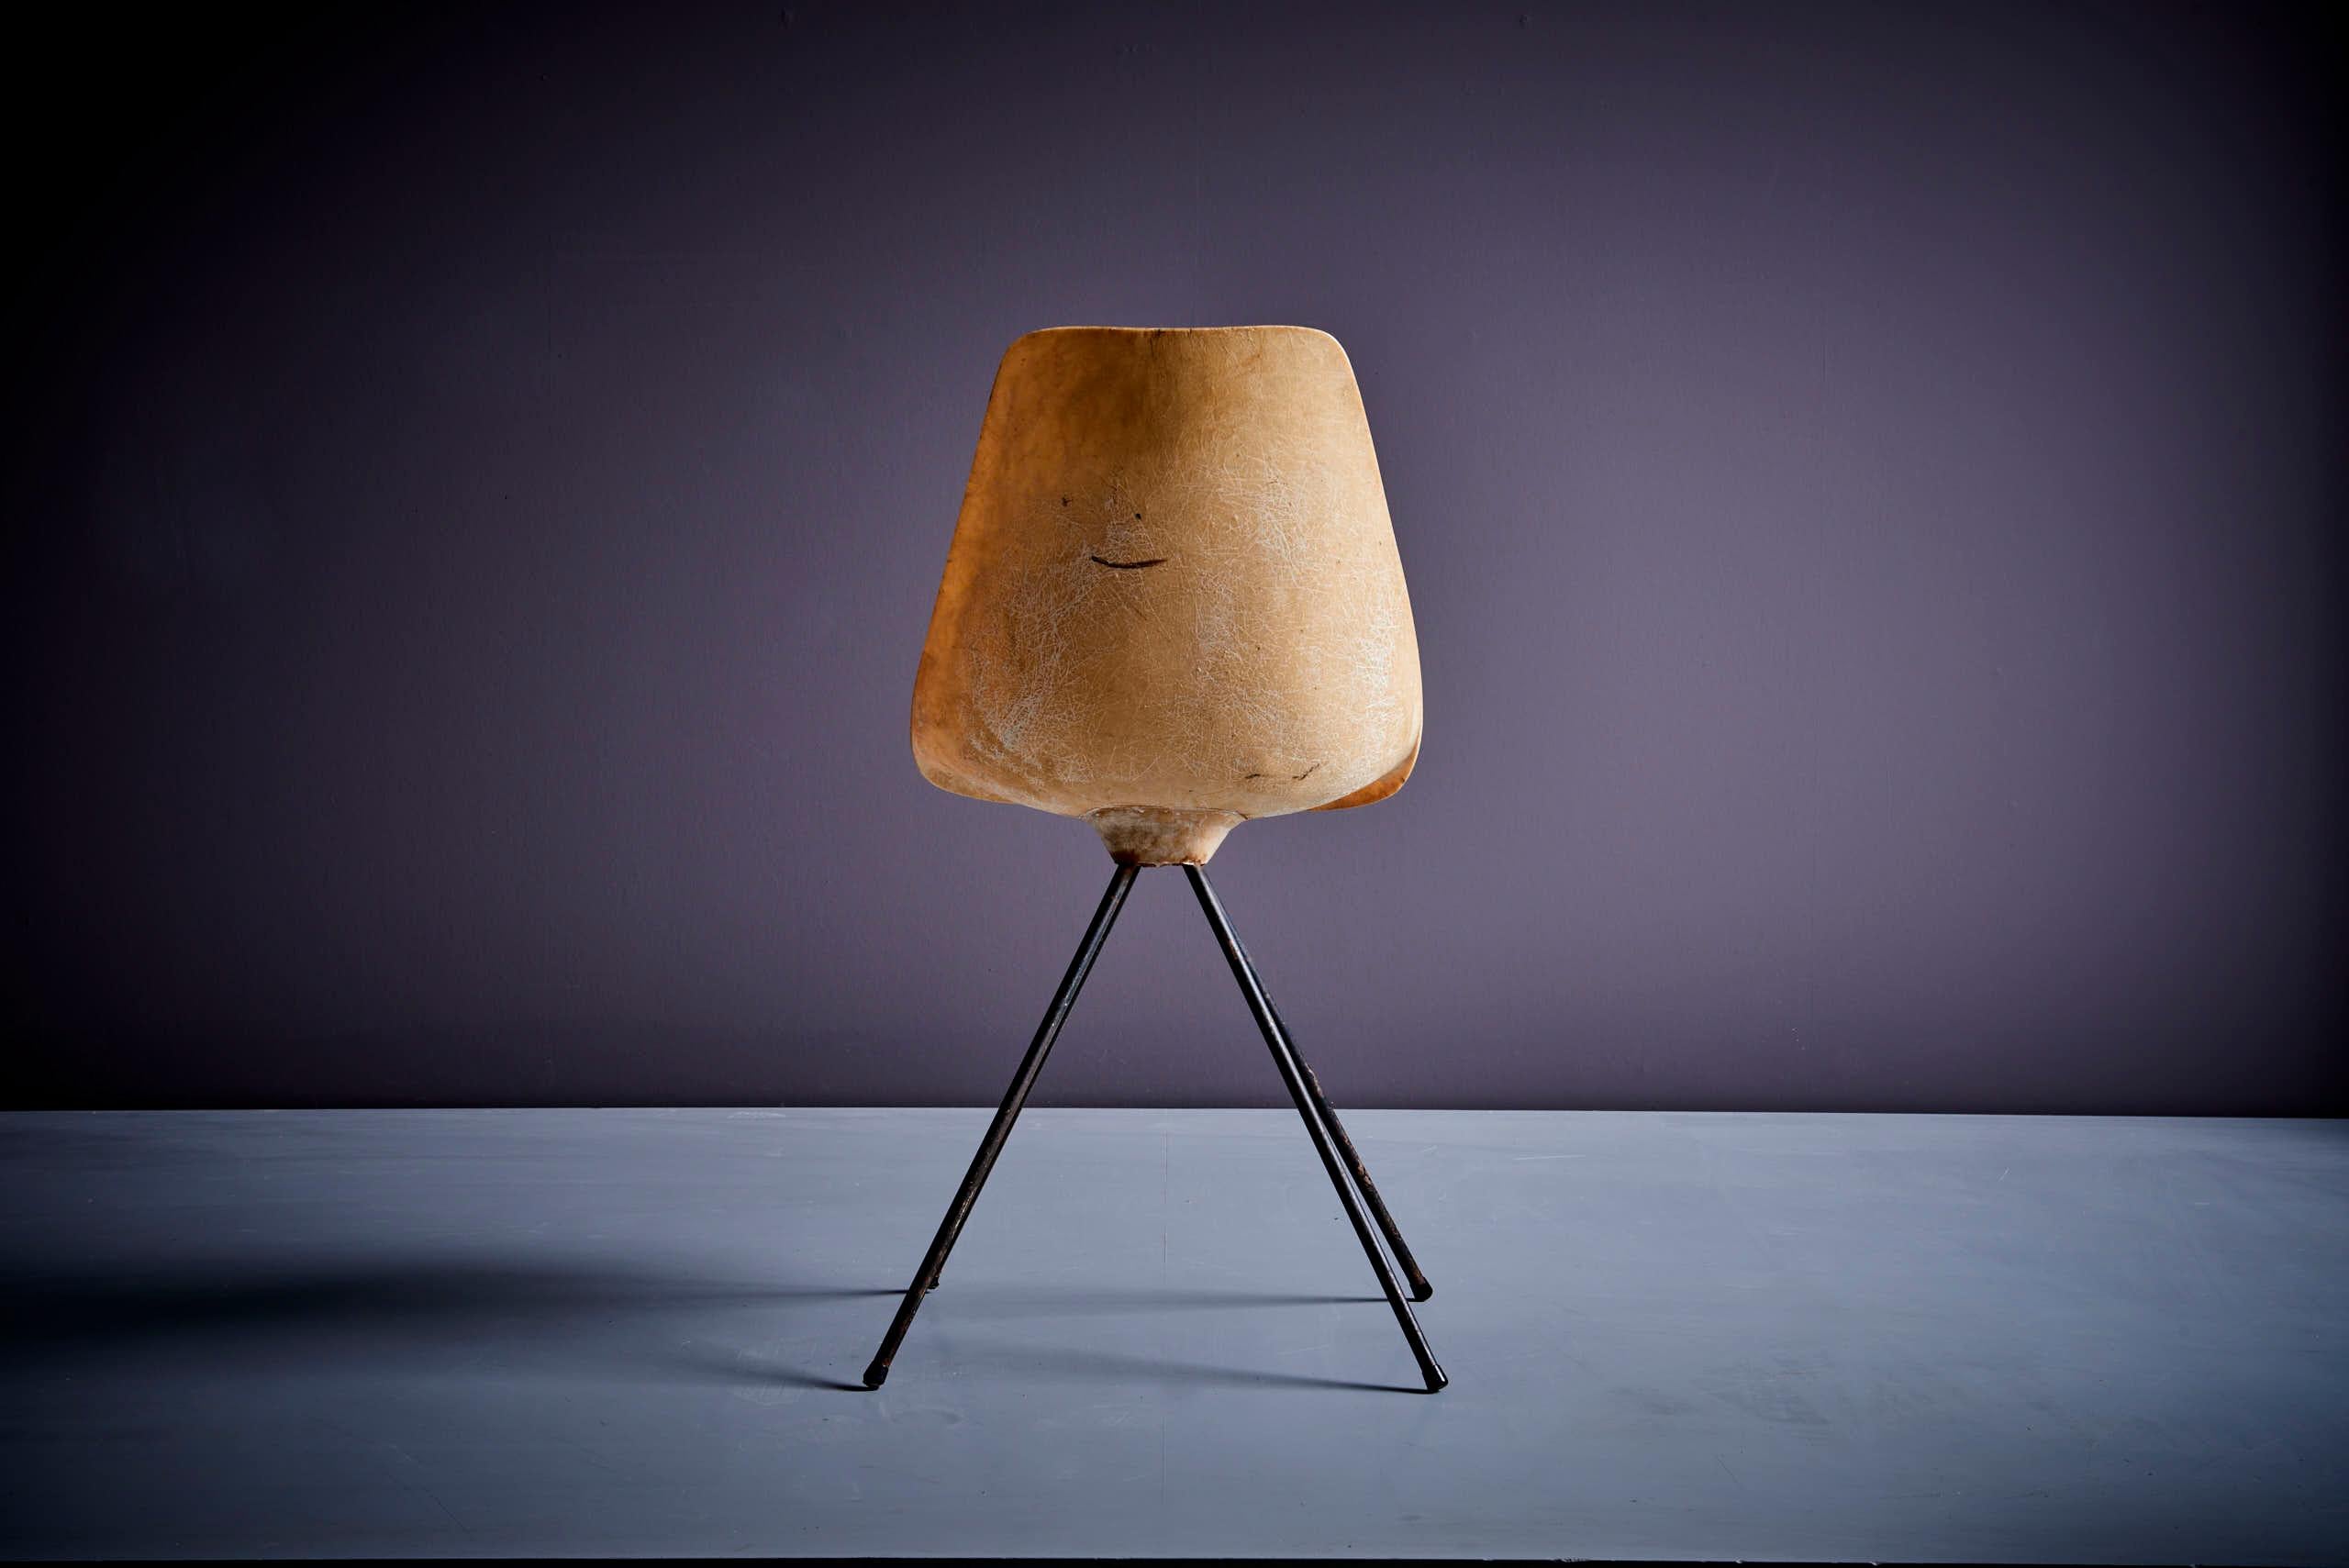 Jean-René Picard for S.E.T.A Fiberglass Chair France - 1950s For Sale 1